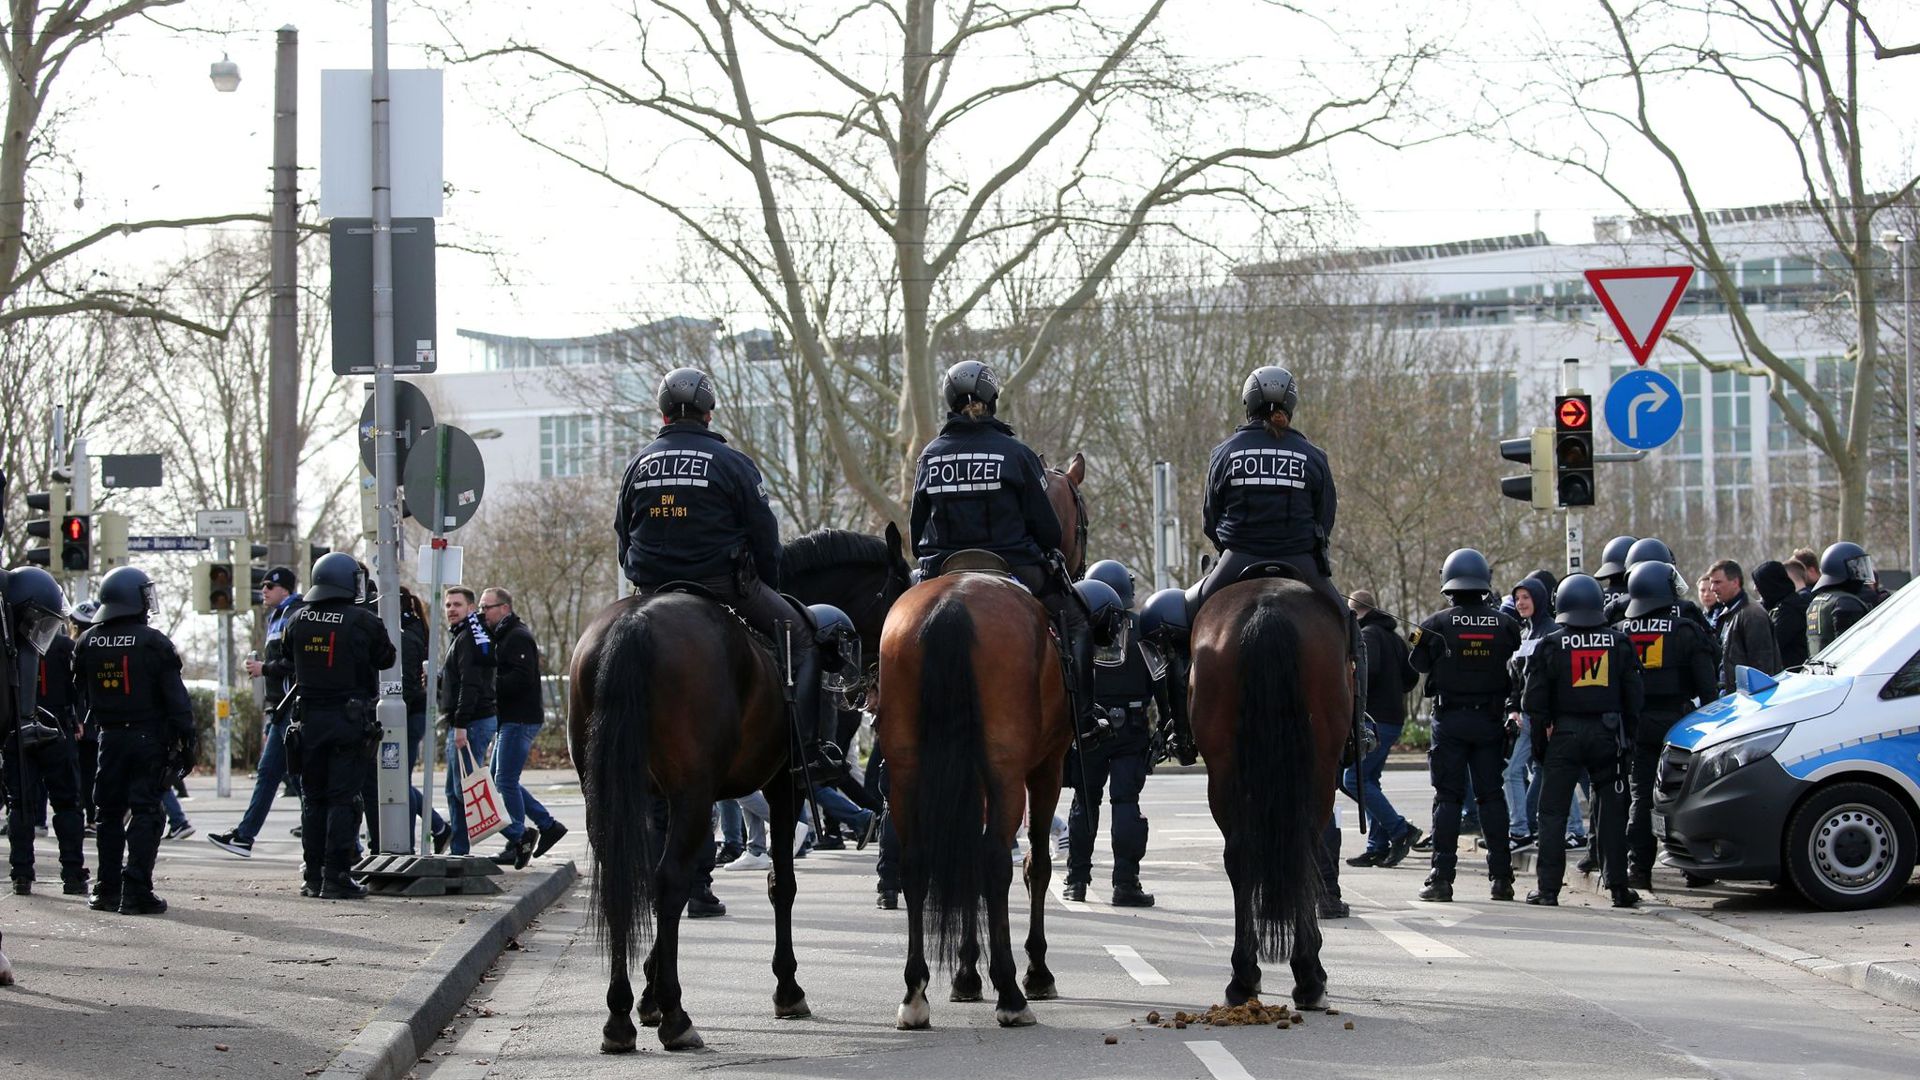 Die Polizei sichert den Bereich vor dem Stadion.